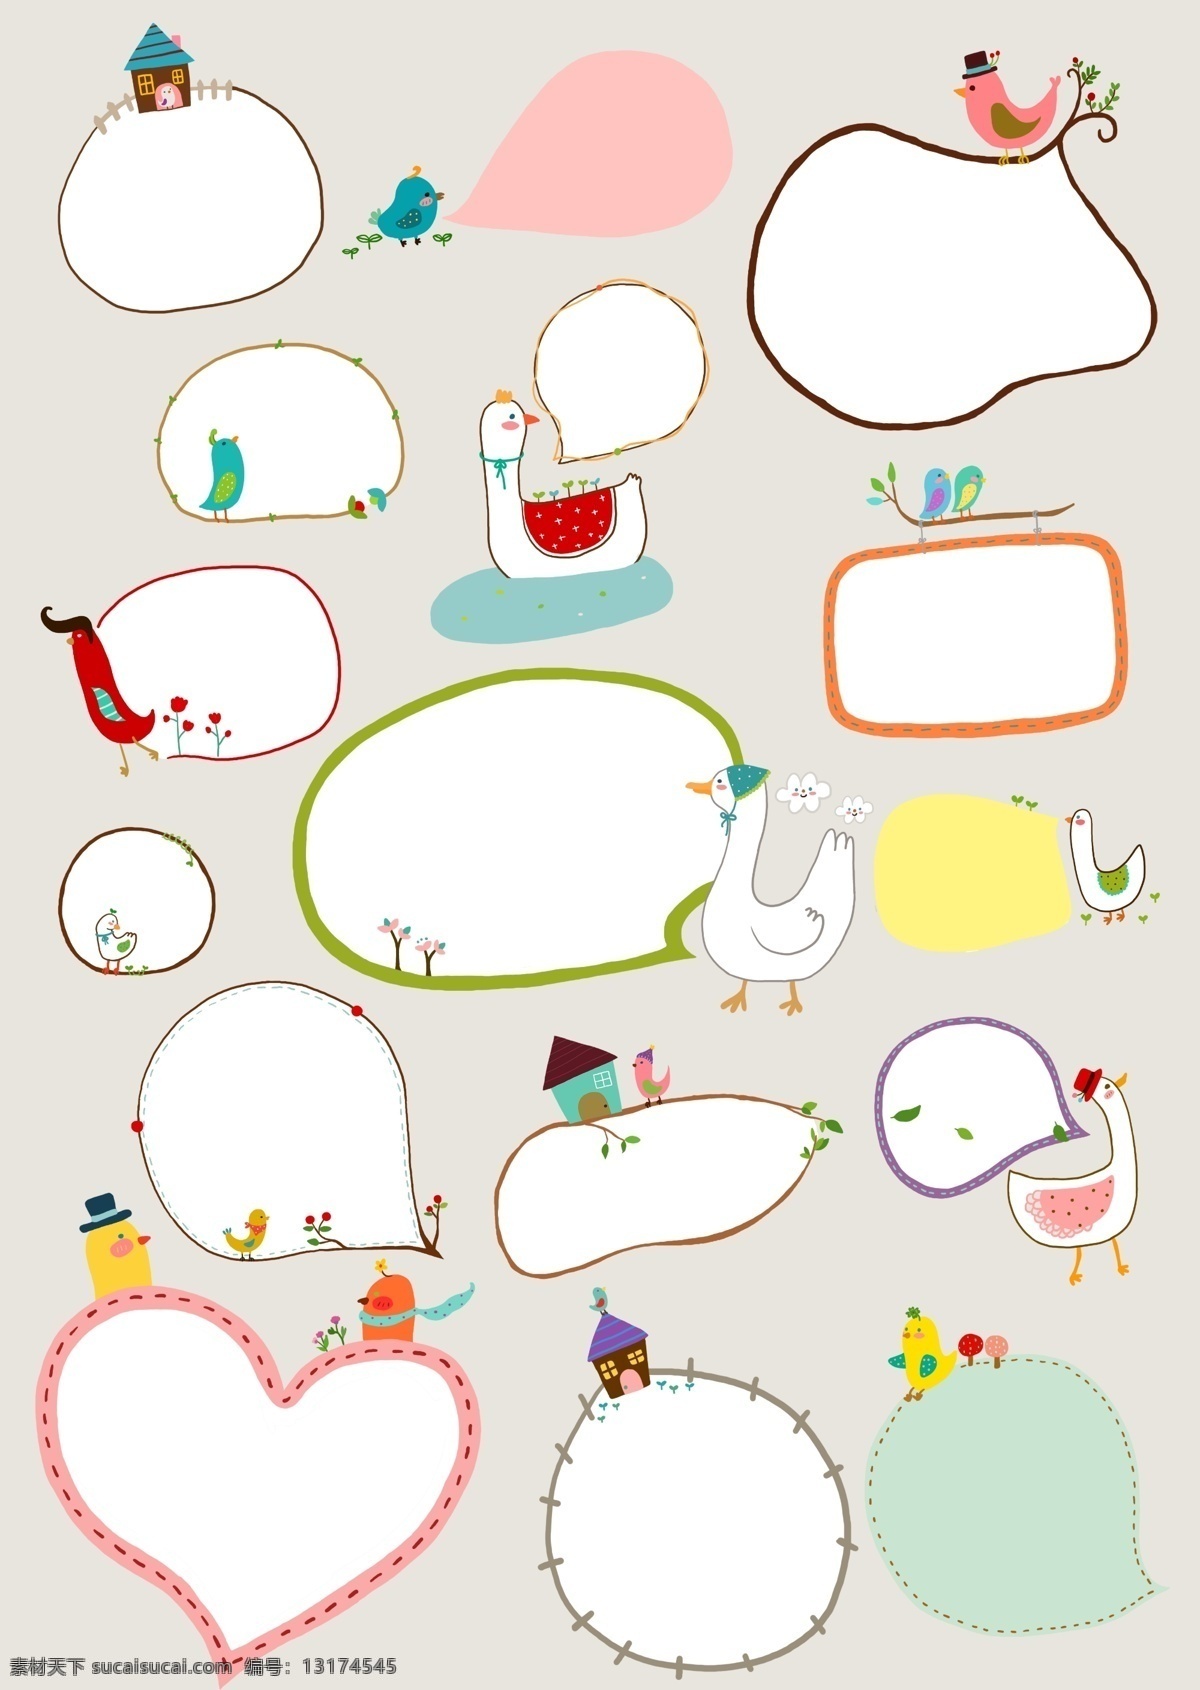 白色 小鸟 对话框 psd素材 边框 插画 白色小鸟 psd源文件